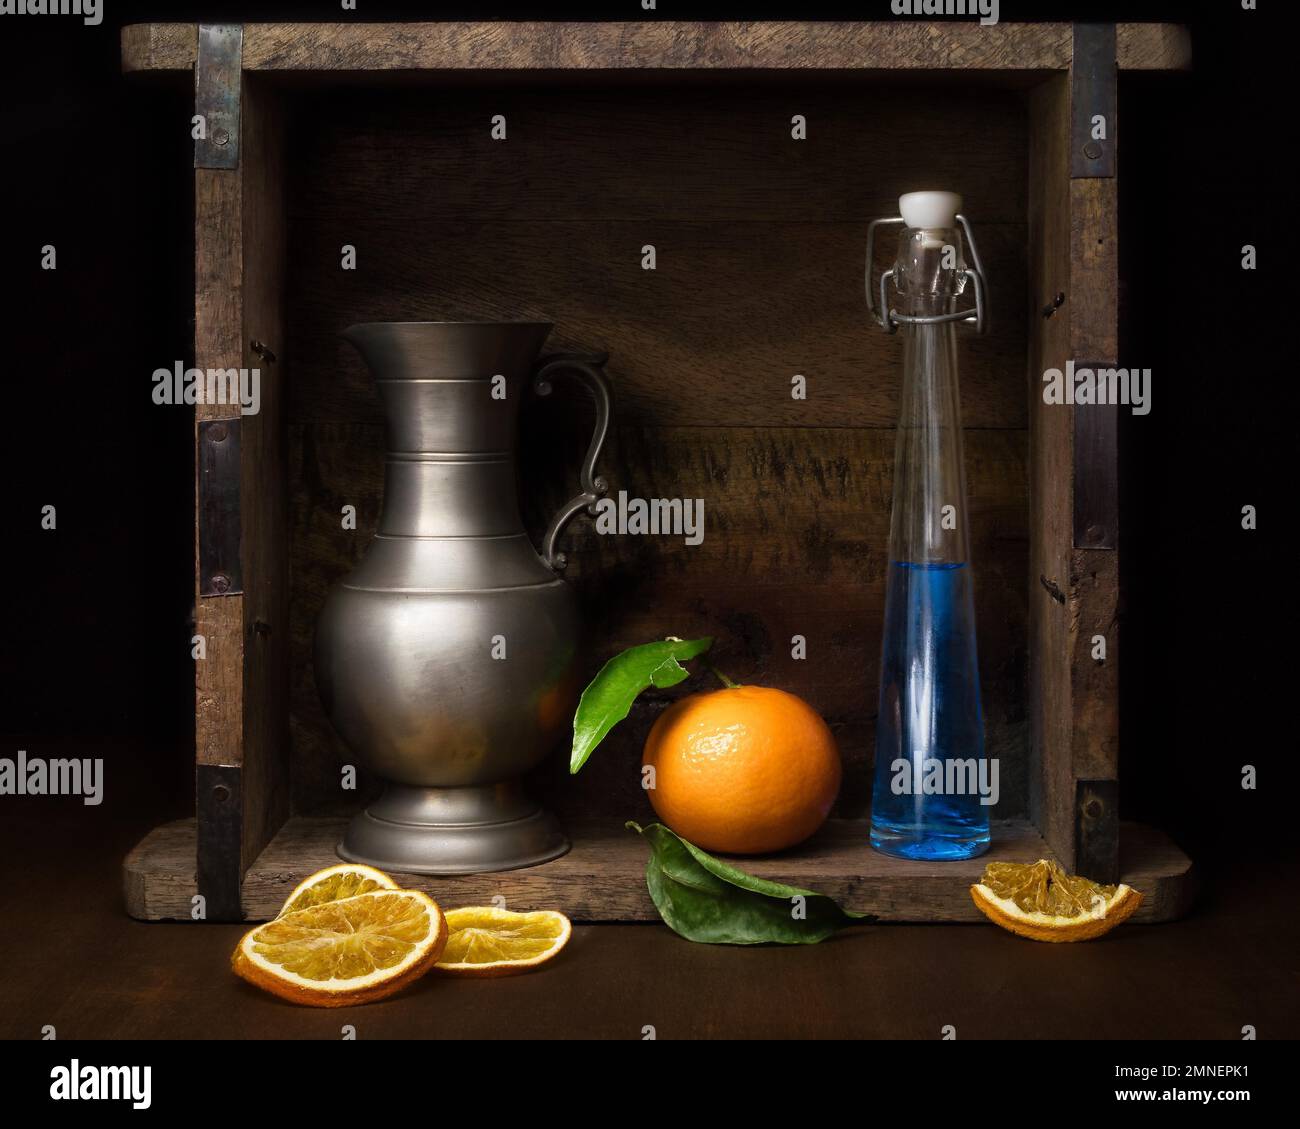 Stillleben mit Glasflasche, Mandarine und Zinnkrug, Studioaufnahme, dunkler Hintergrund Stockfoto